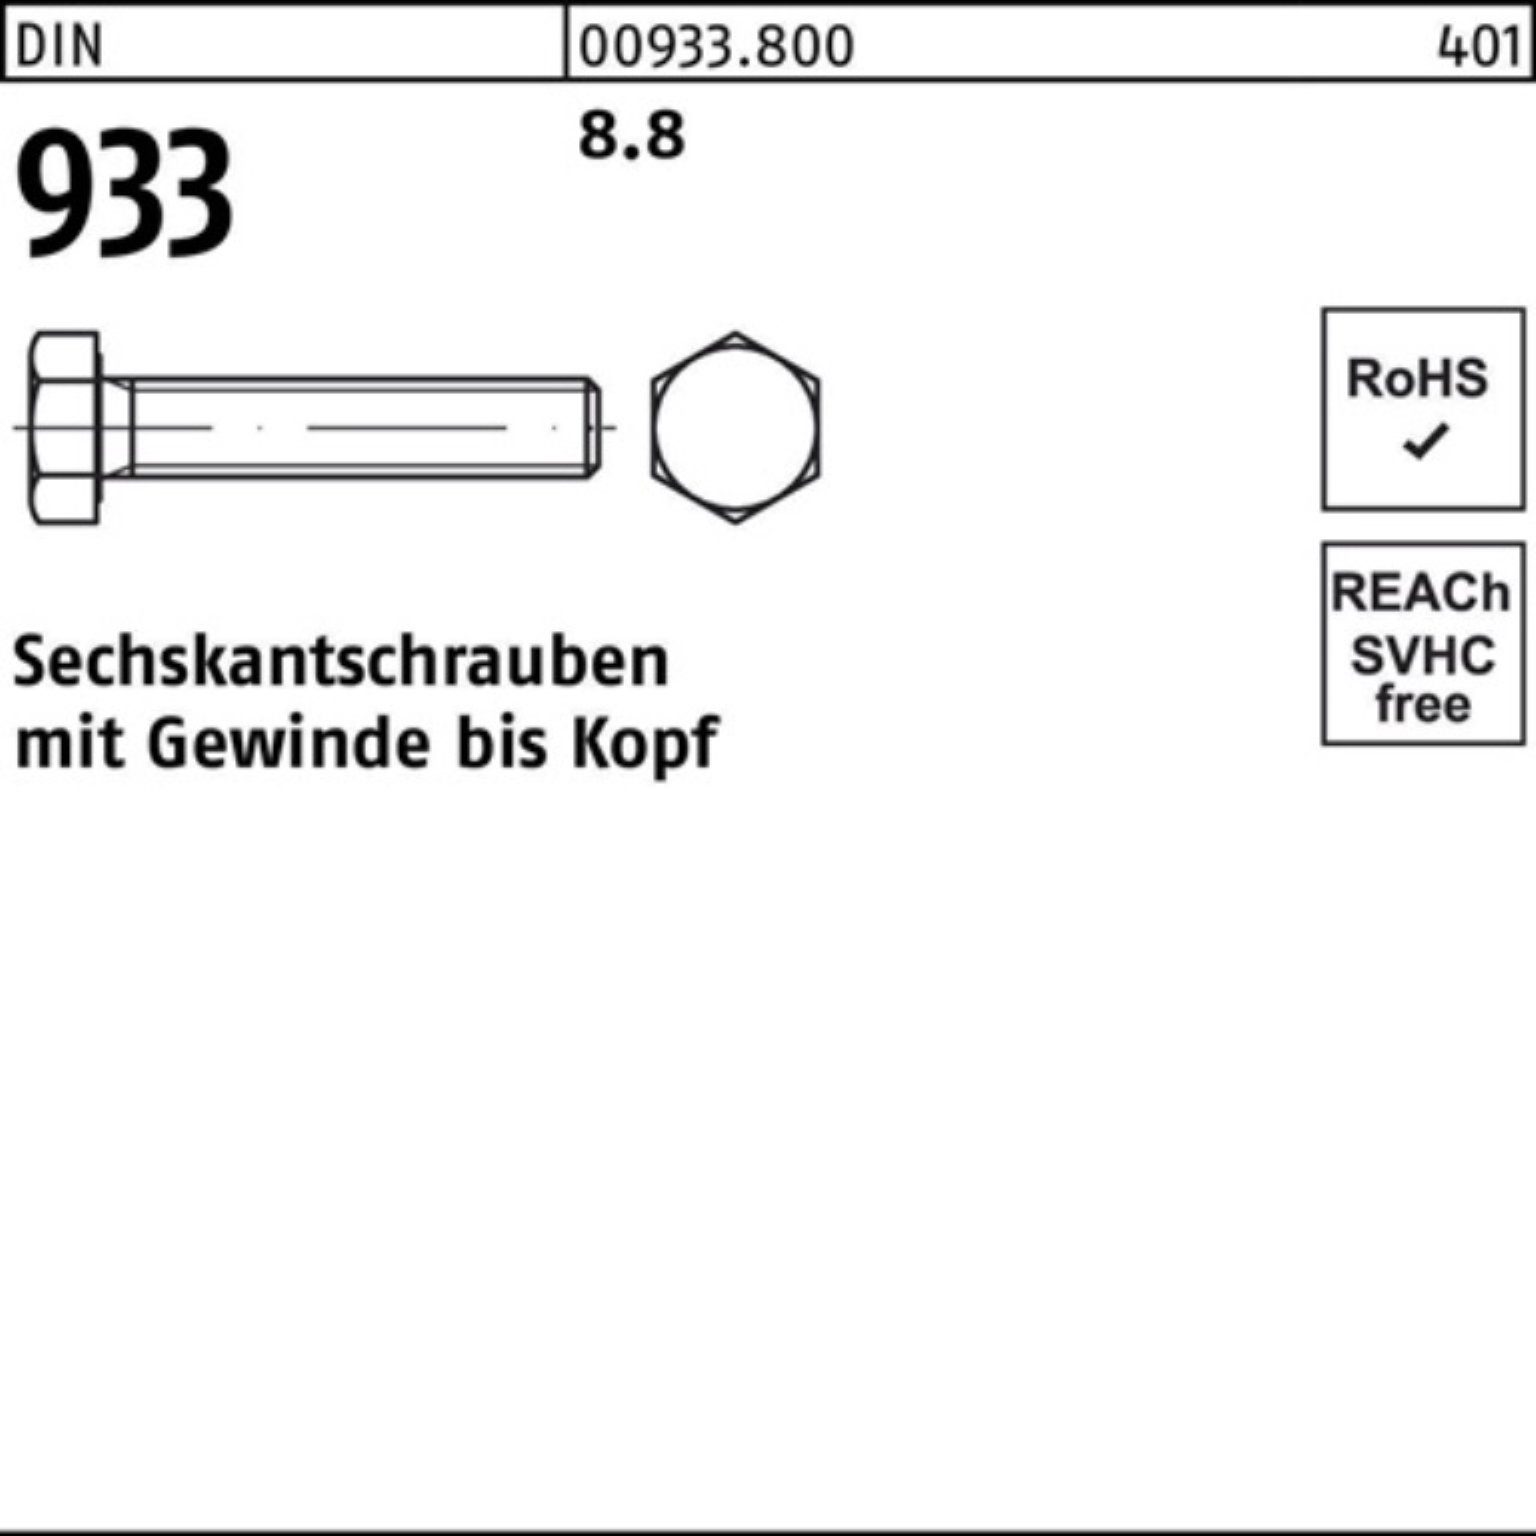 Reyher Sechskantschraube 100er 933 933 DIN Stück Pack 25 DIN 190 Sechskantschraube M18x 8.8 VG